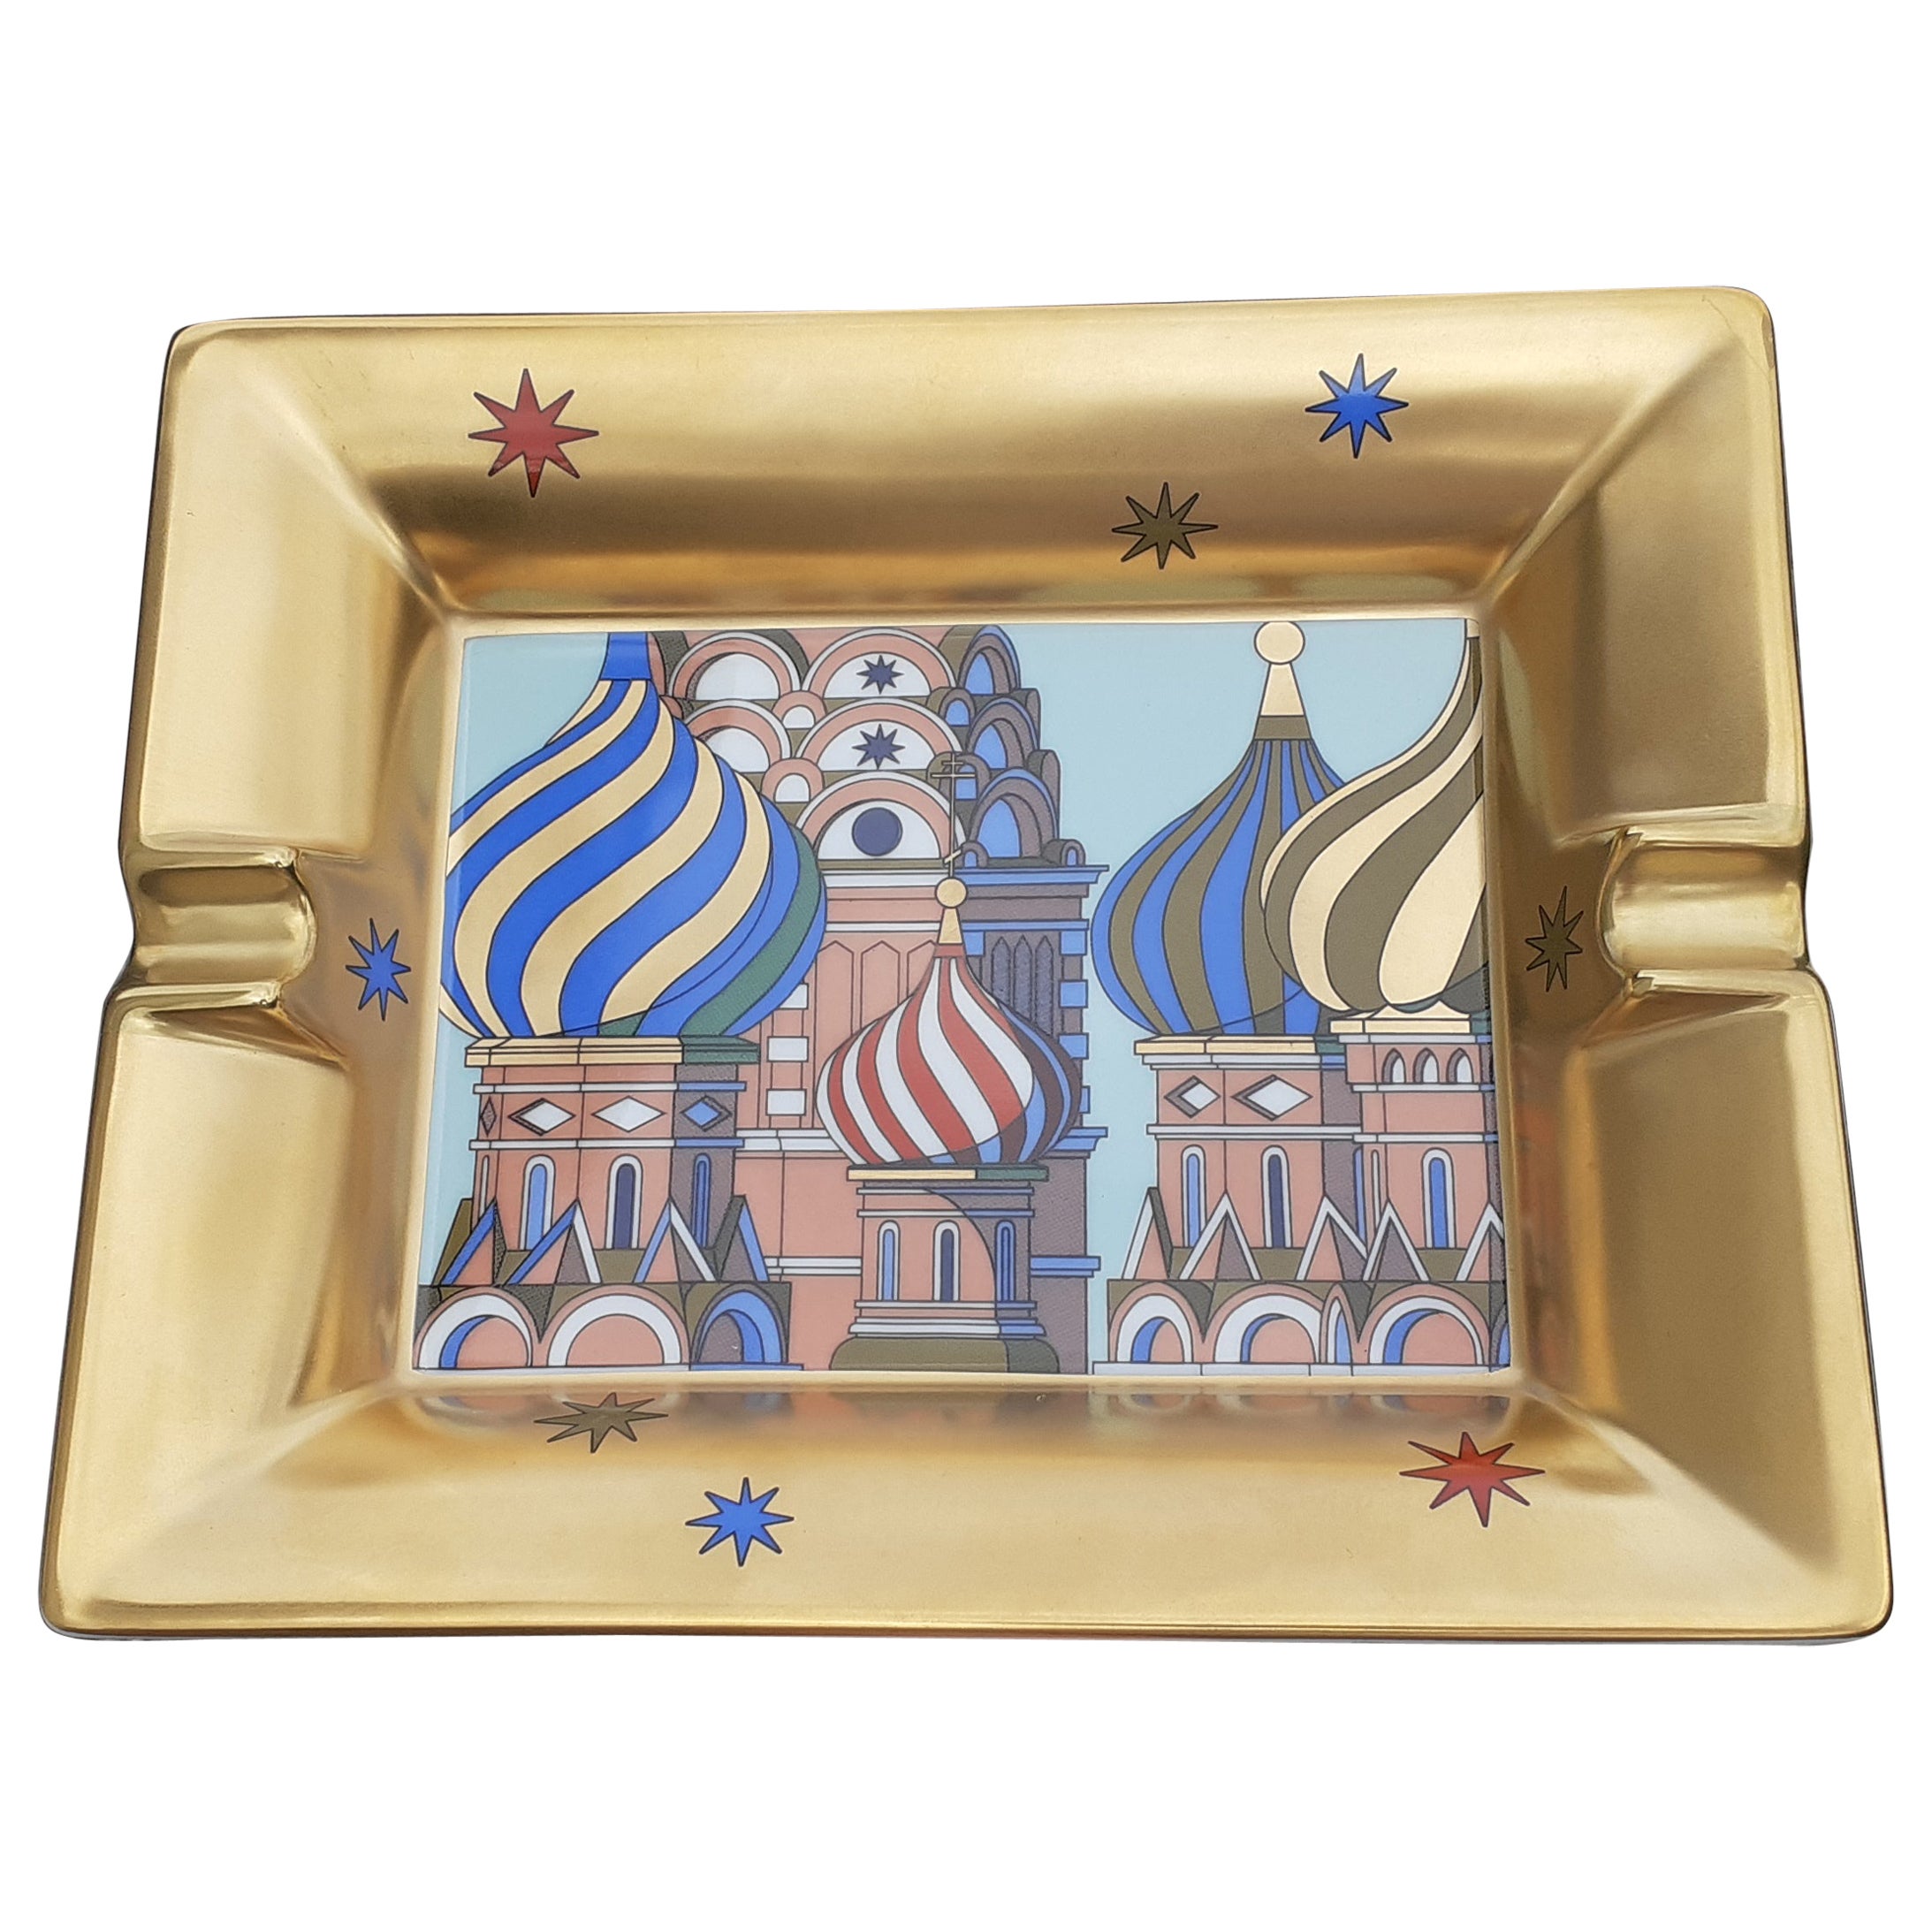 Hermès Aschenbecher Sobor Vasiliya Blazhennogo St. Basilius Kathedrale Porzellan Russland